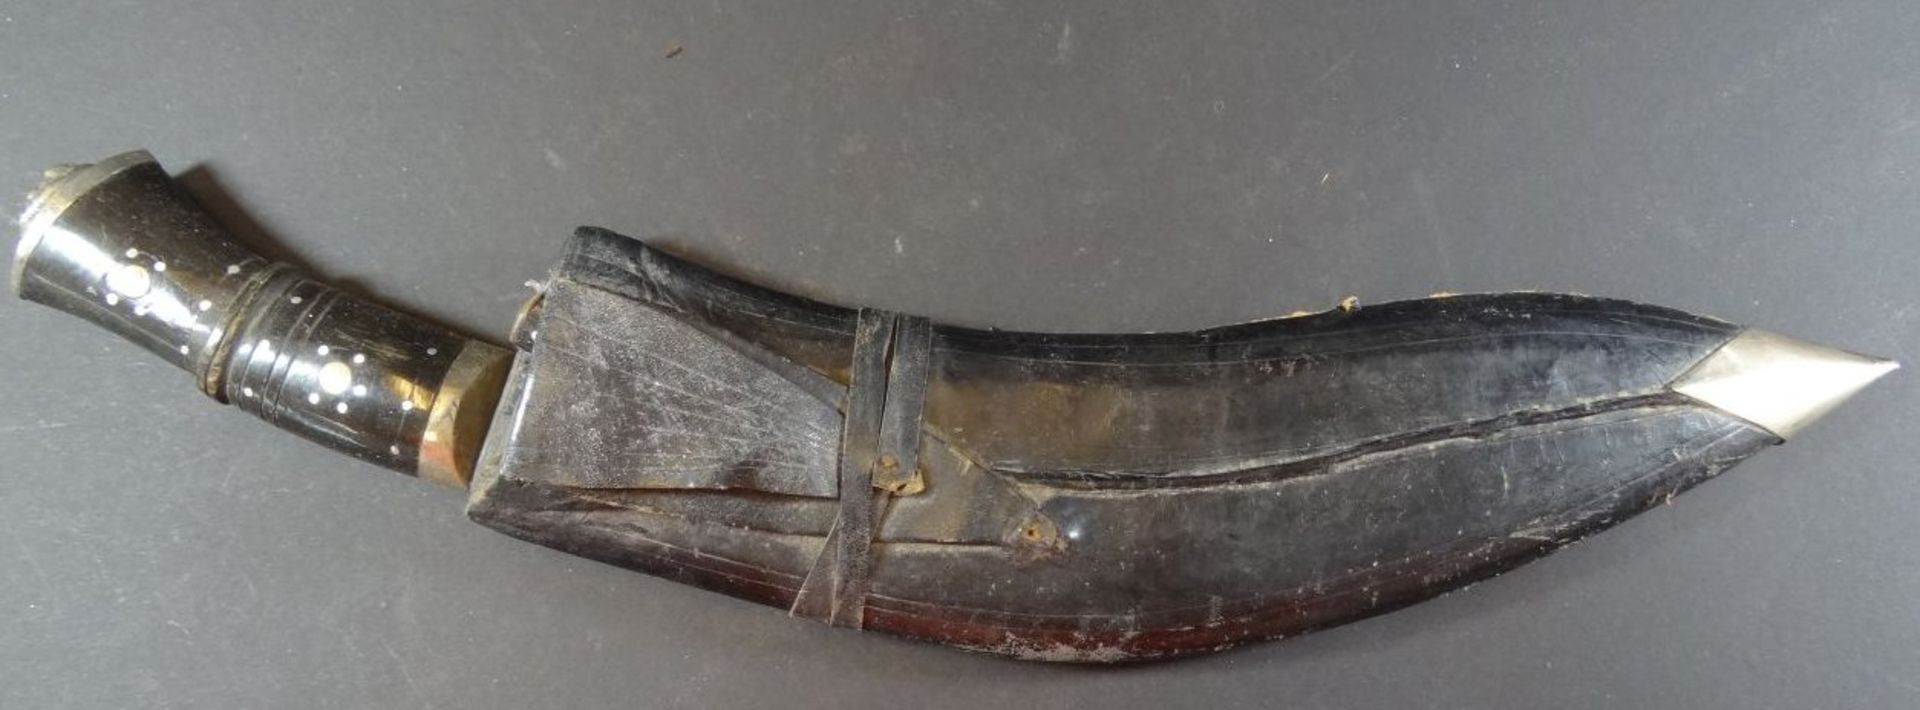 arabischer Krummdolch mit 2 kl. Messern, Lederscheide, L-40cm - Bild 2 aus 7